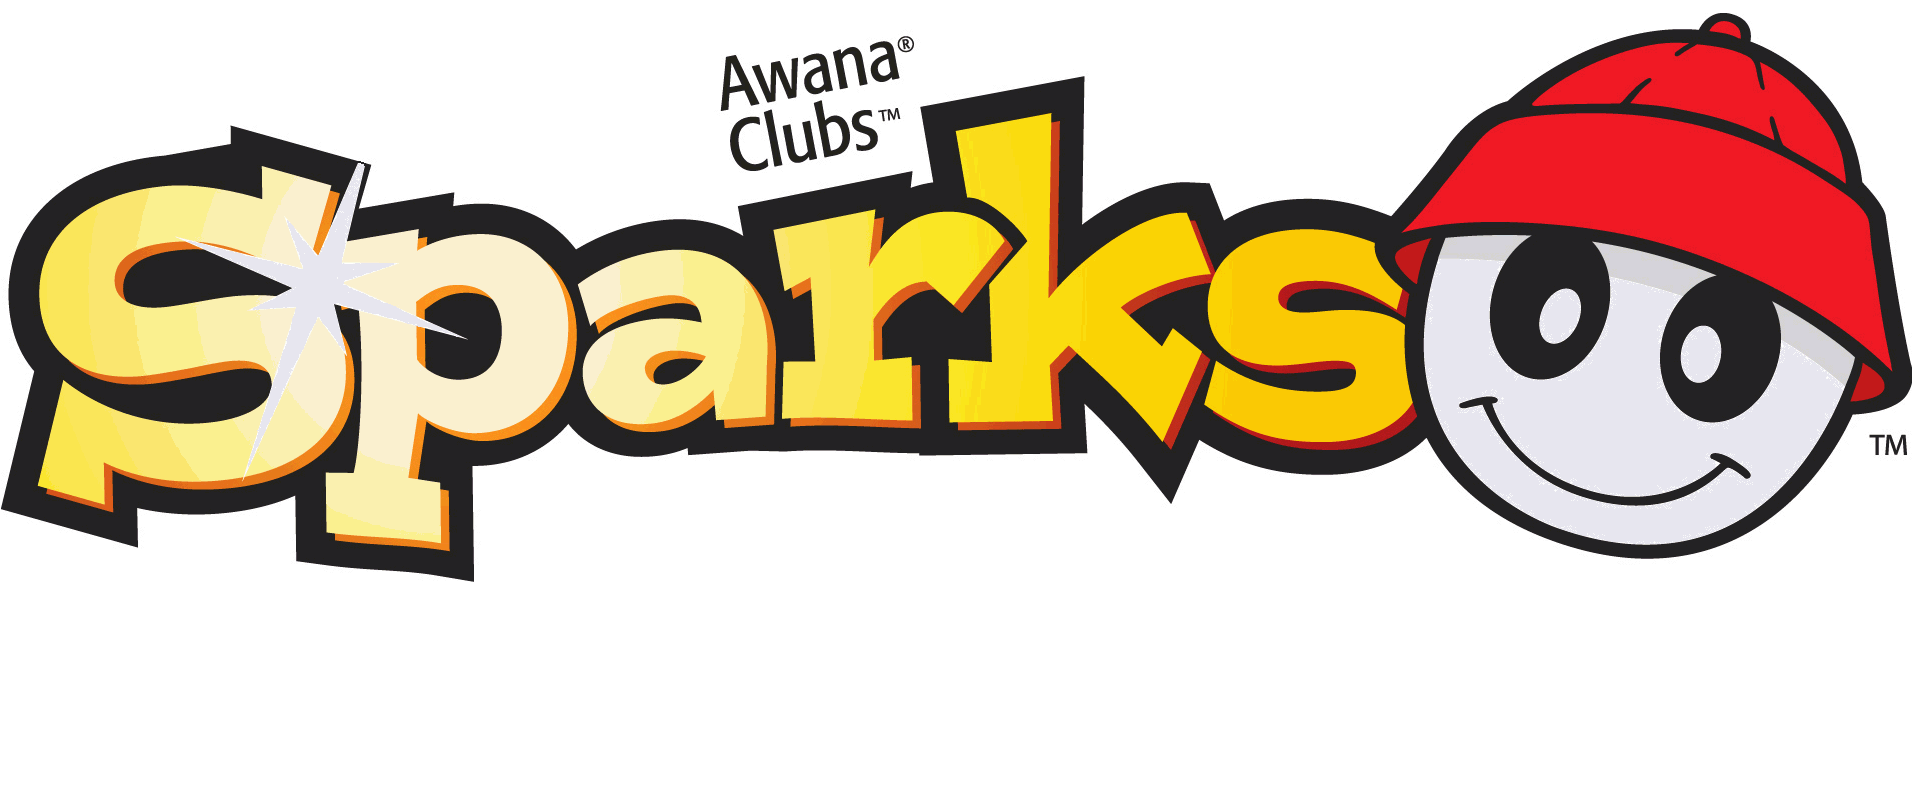 AWANA SPARKS CLIPART